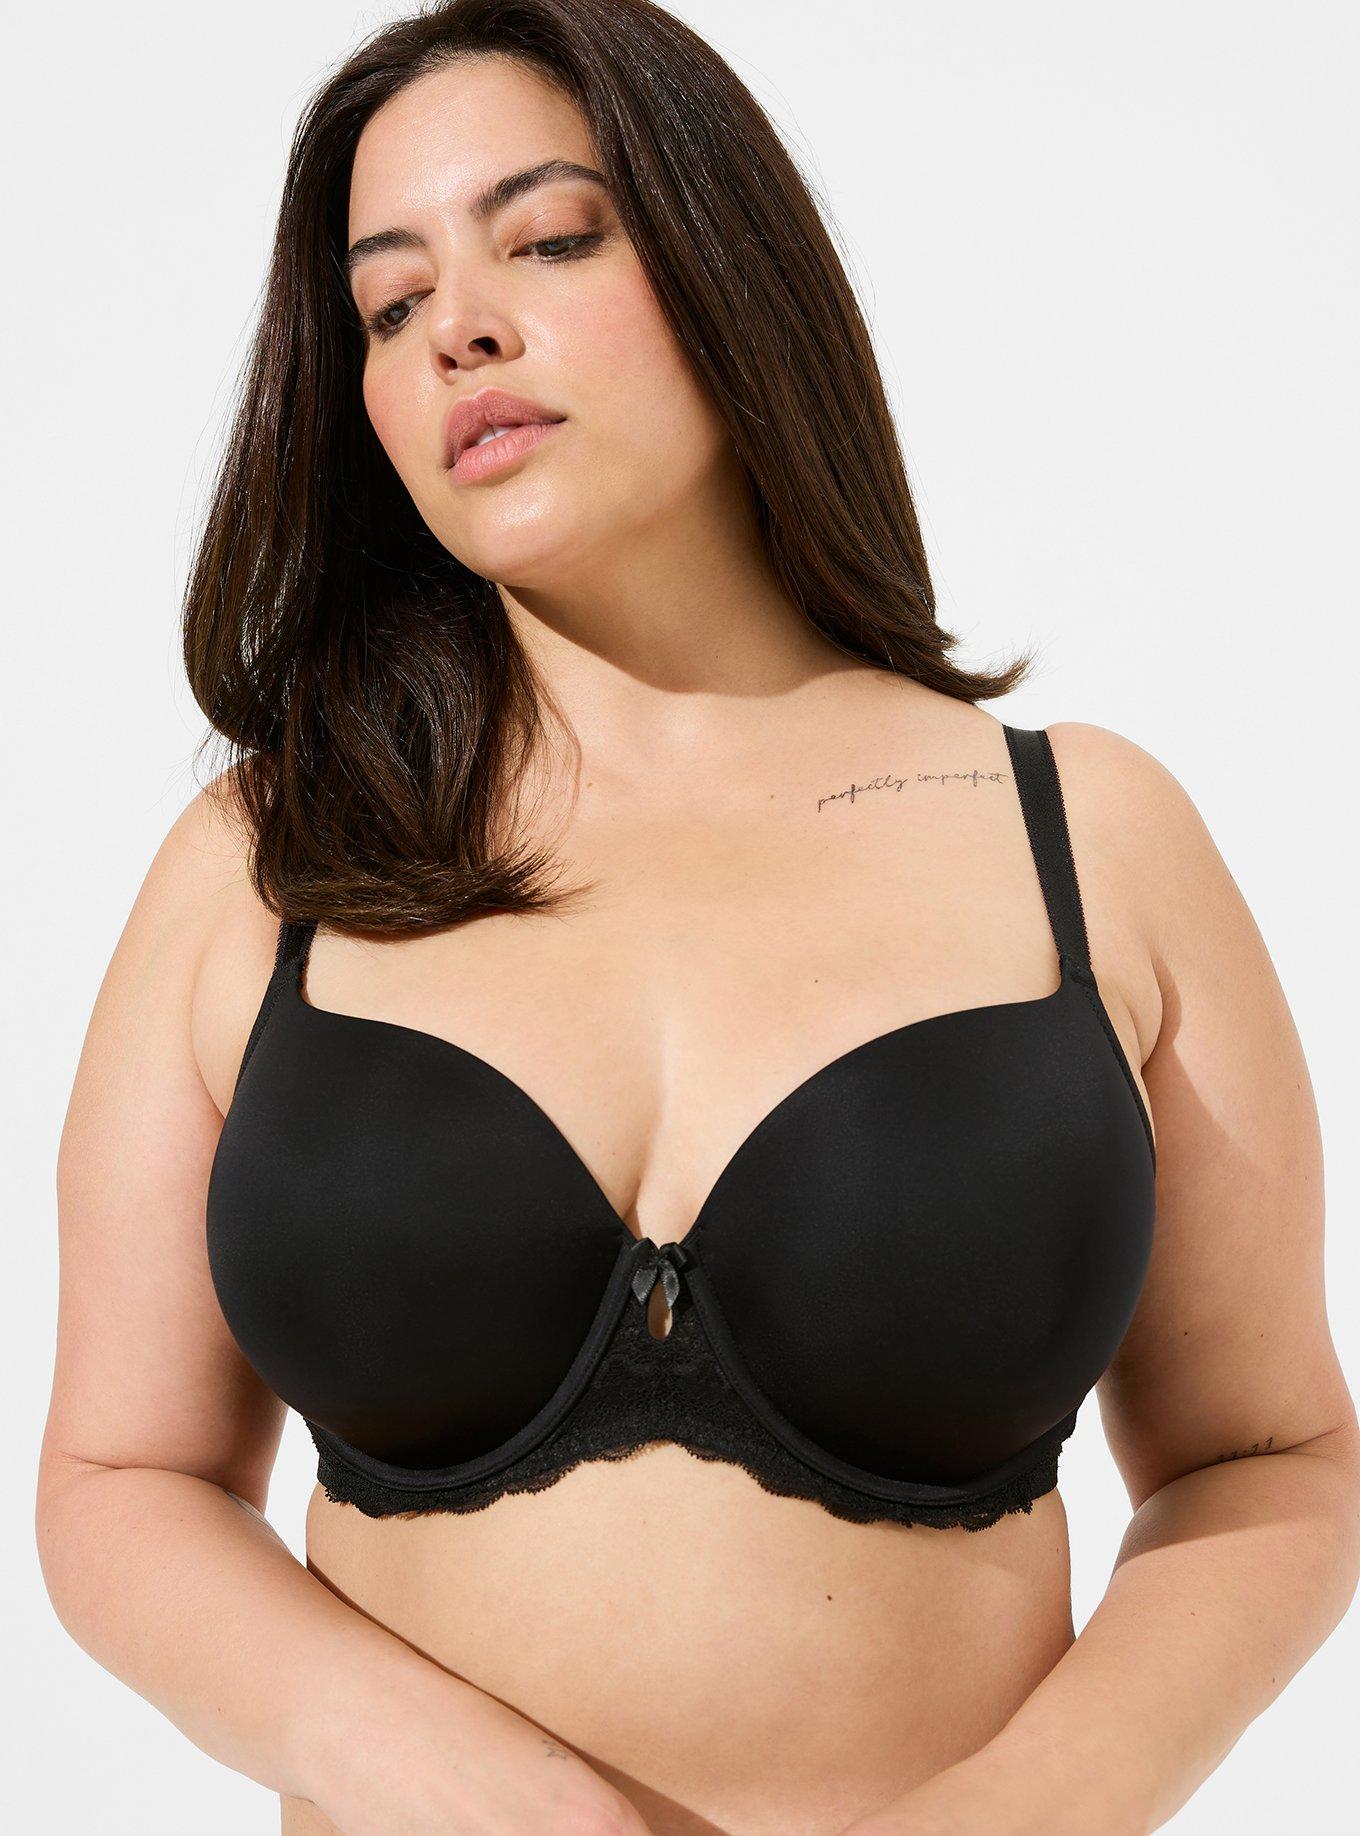 Sexy women's bra unlined d cup lingerie underwire bras plus size brassiere  36d-46dd